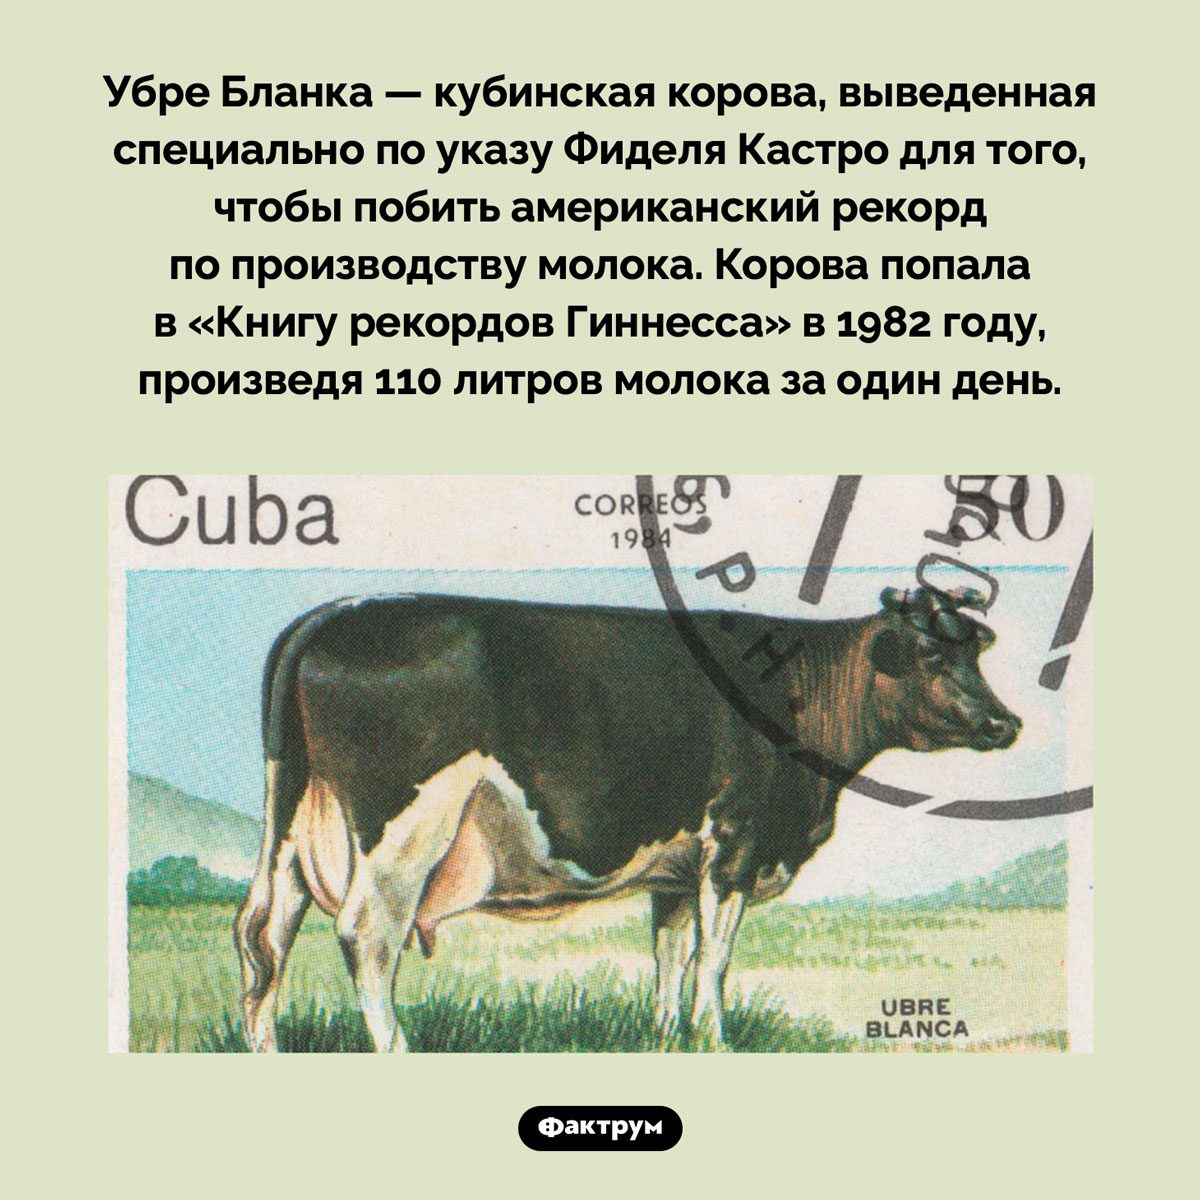 Корова Убре Бланка. Убре Бланка — кубинская корова, выведенная специально по указу Фиделя Кастро для того, чтобы побить американский рекорд по производству молока. Корова попала в «Книгу рекордов Гиннесса» в 1982 году, произведя 110 литров молока за один день.